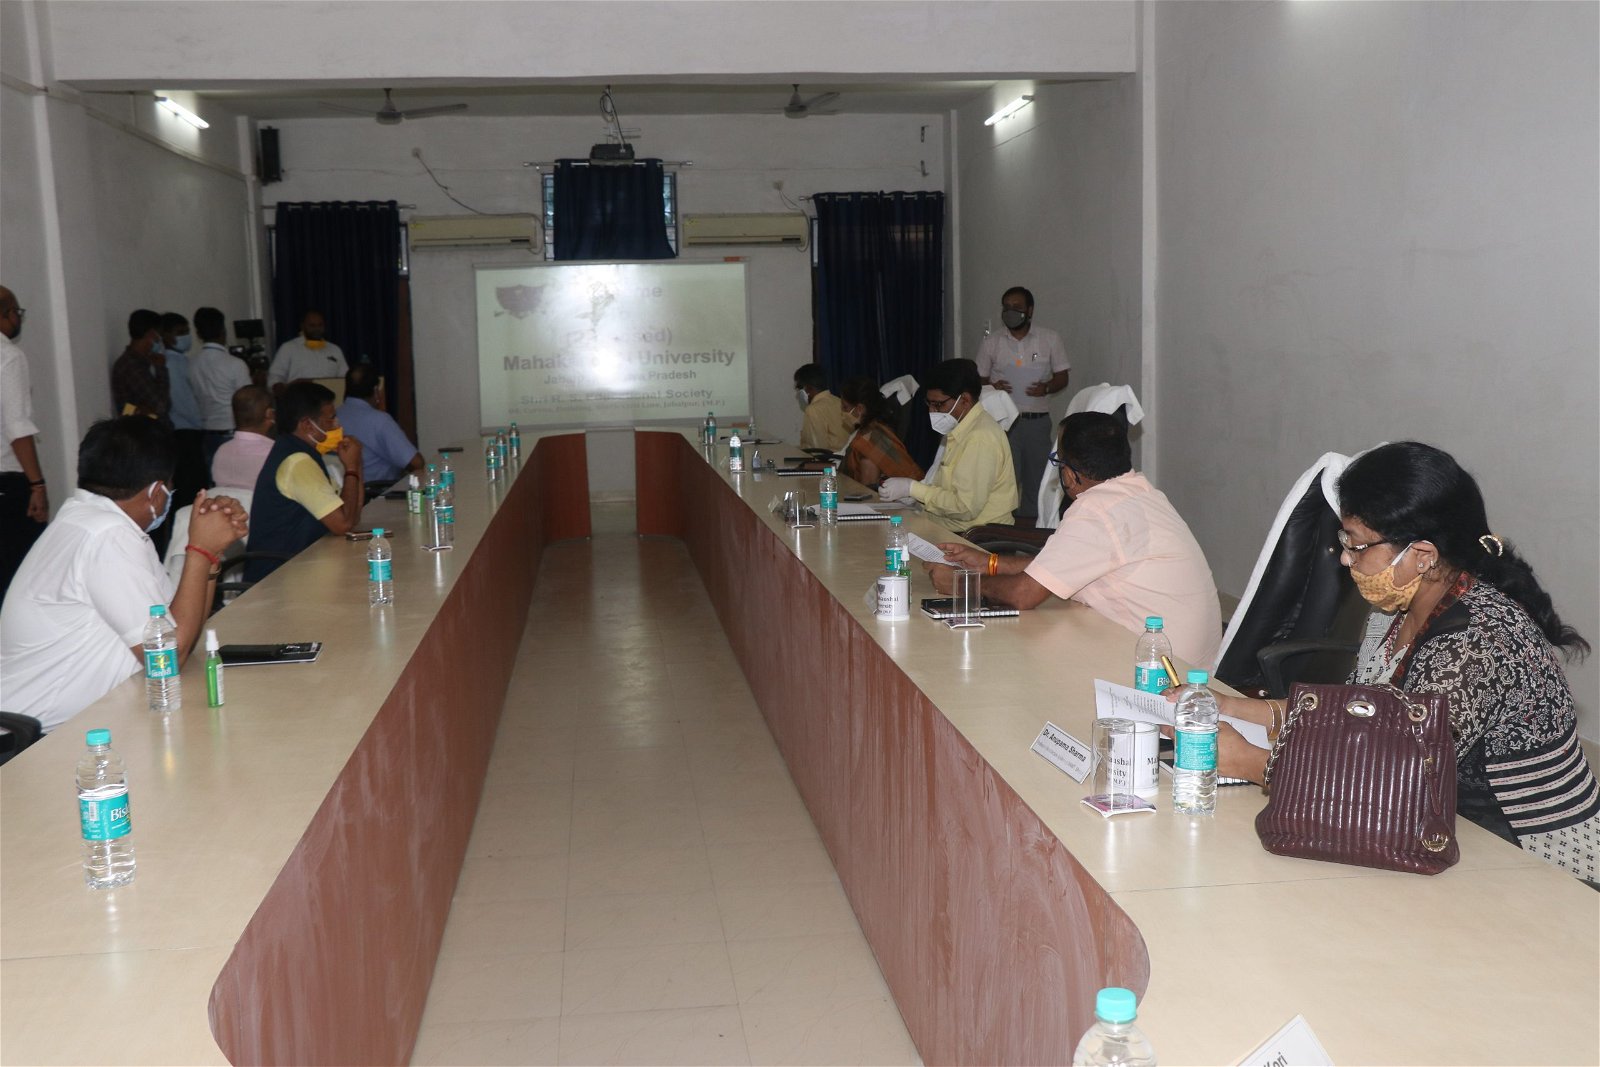 Meeting Room Mahakaushal University in Jabalpur